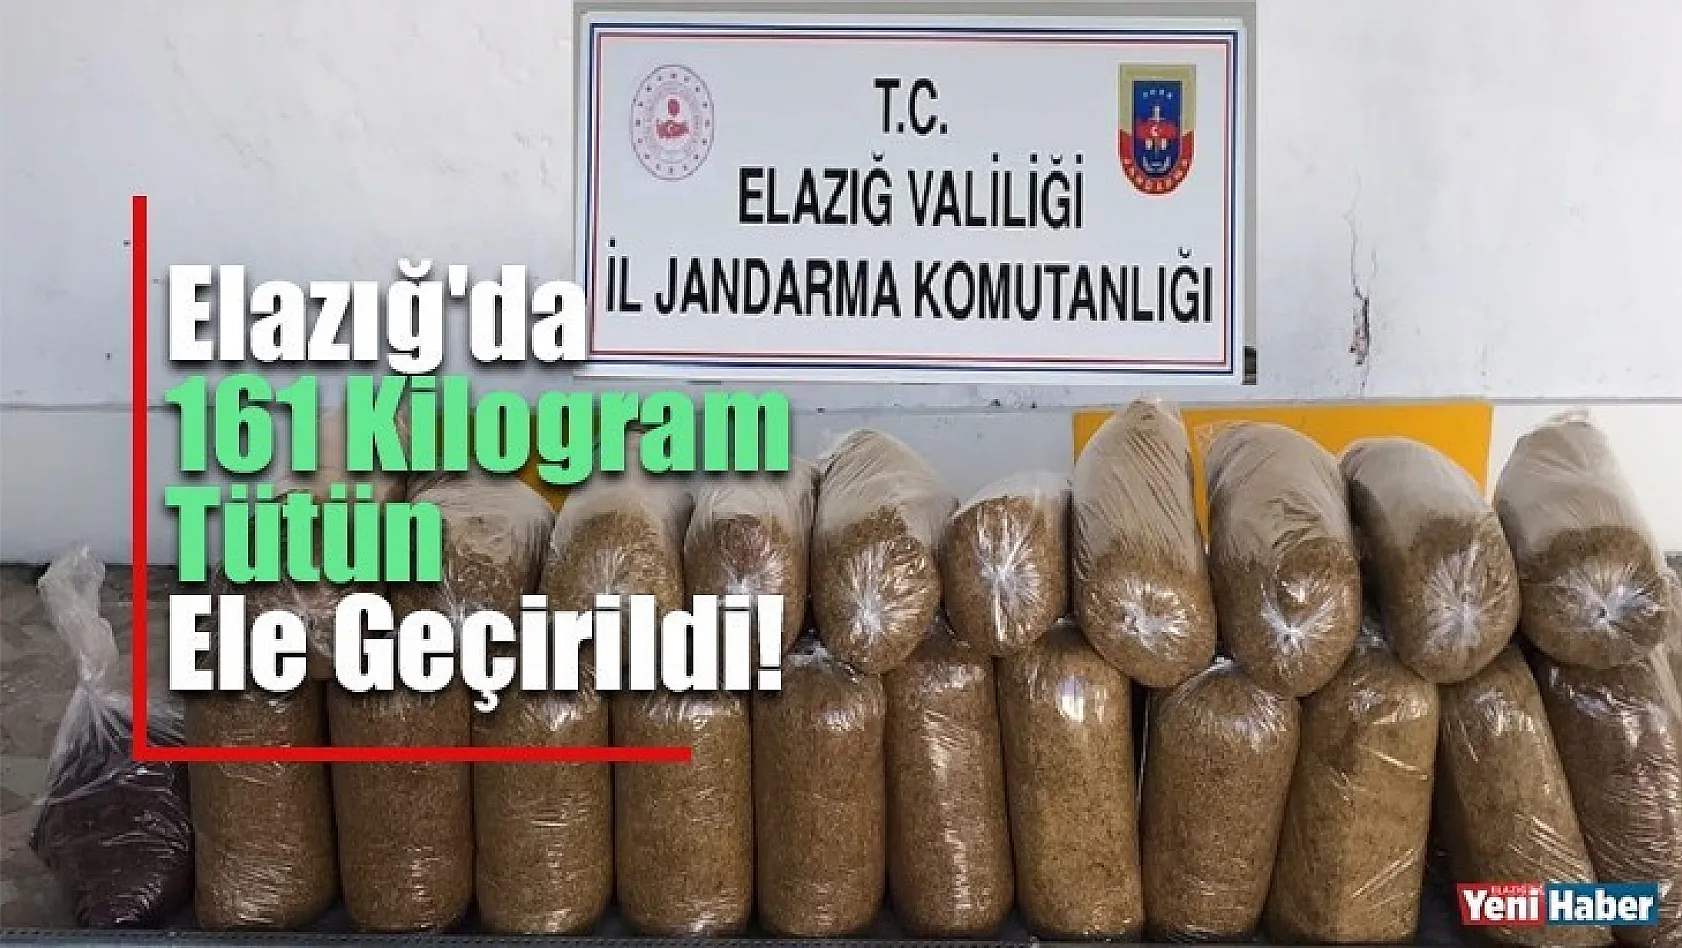 Elazığ'da 161 Kilogram Tütün Ele Geçirildi!